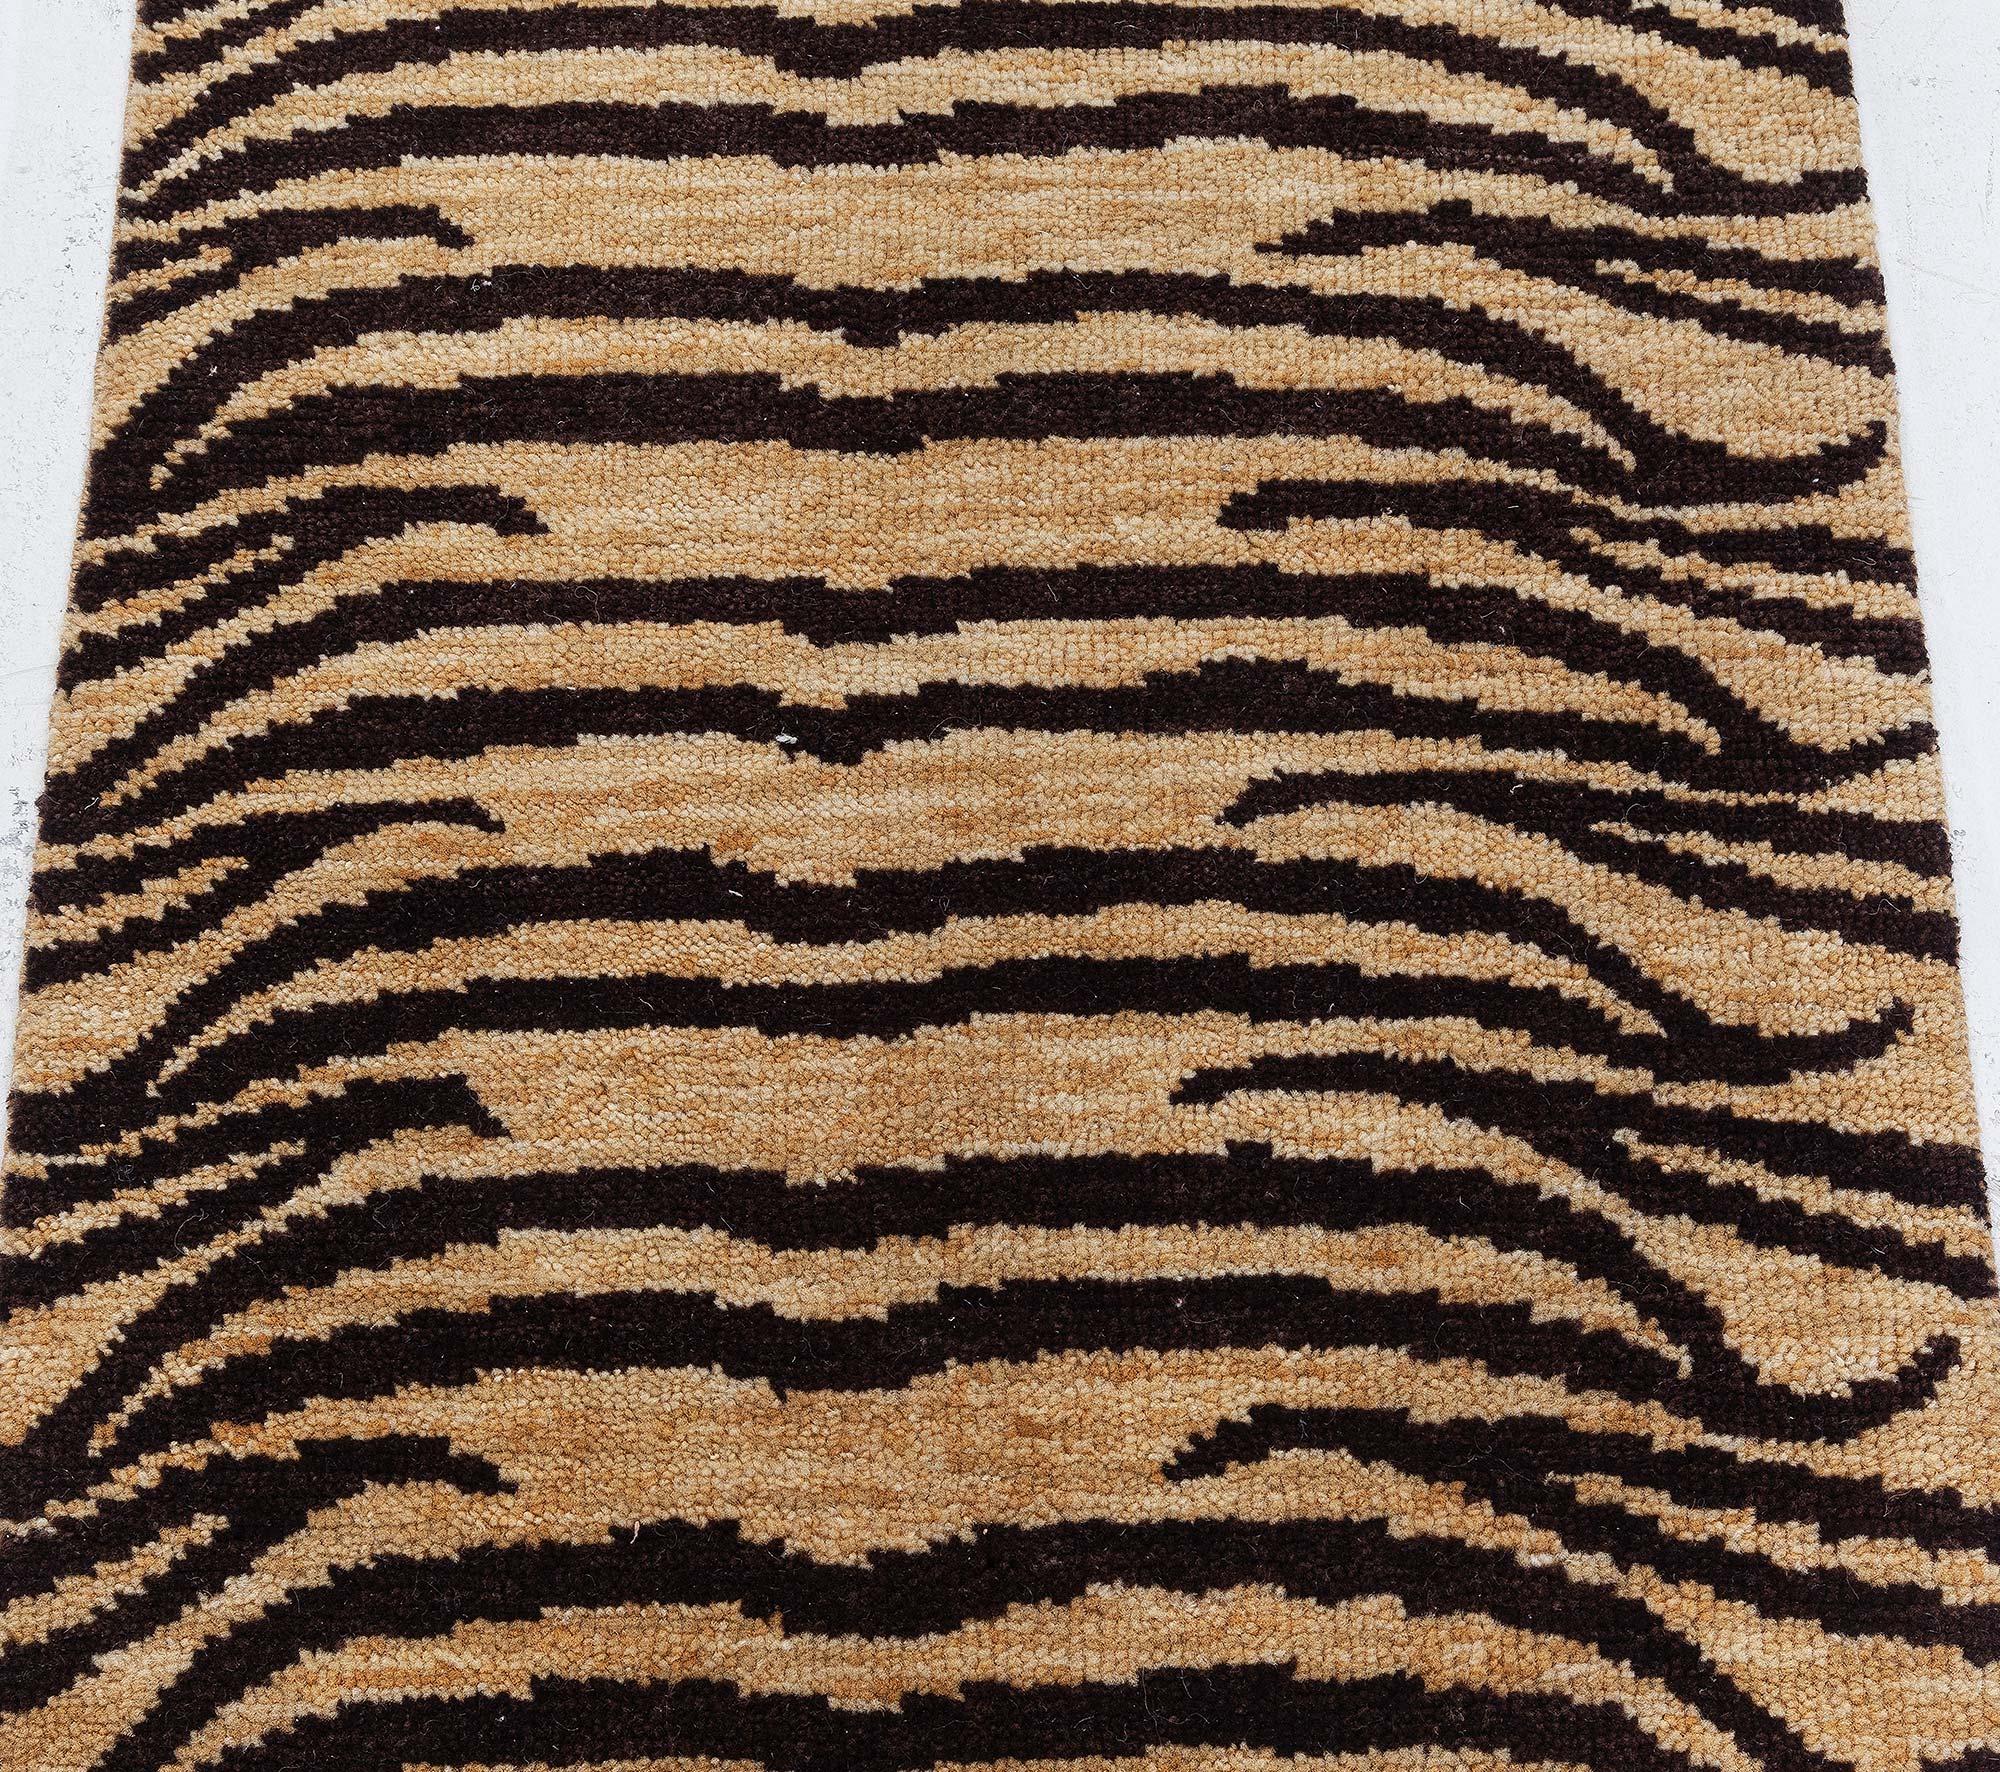 Modern Tiger Rug by Doris Leslie Blau
Size: 2'0